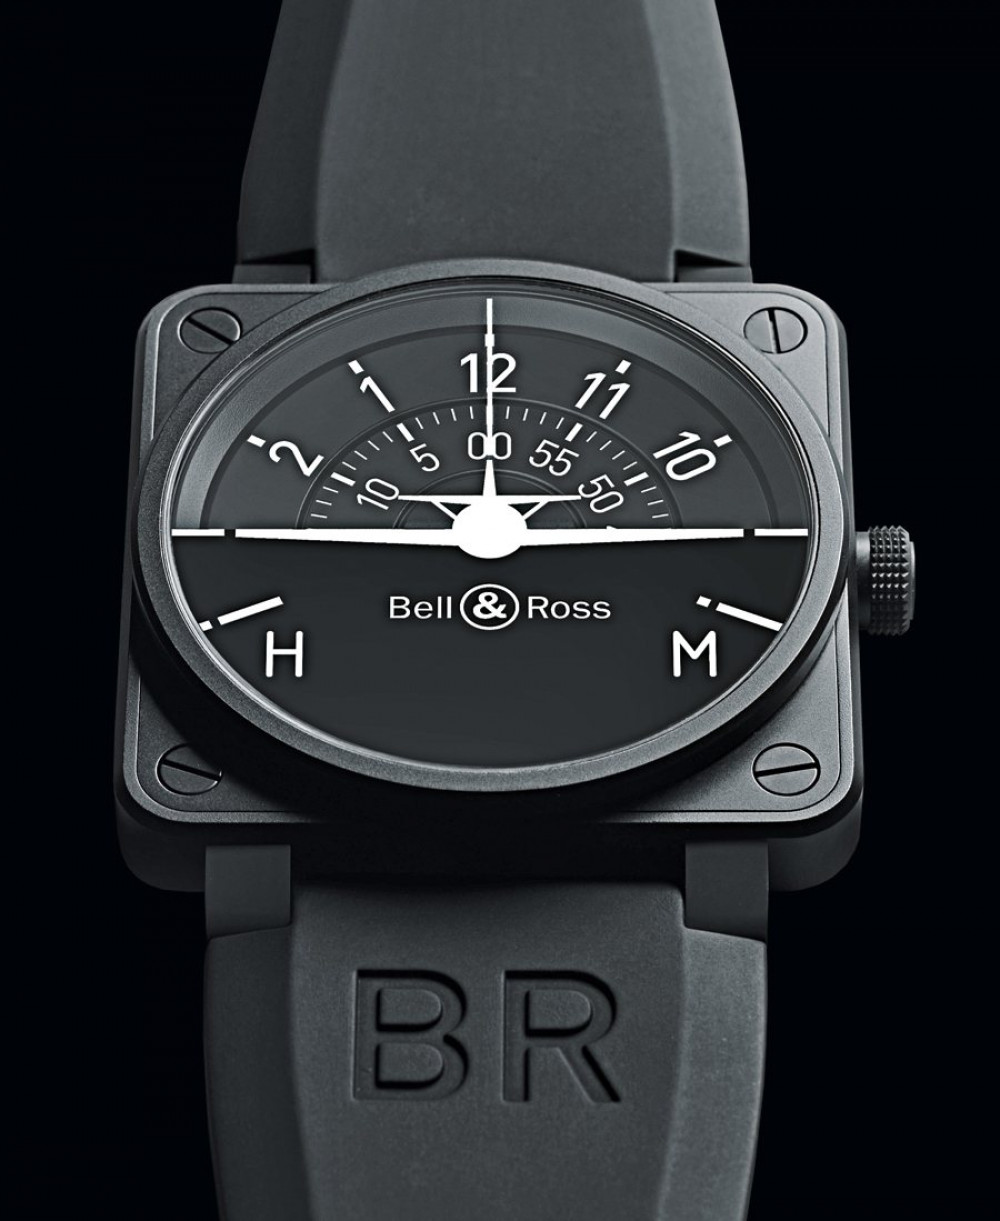 Zegarek firmy Bell & Ross, model BR 01 Turn Coordinator